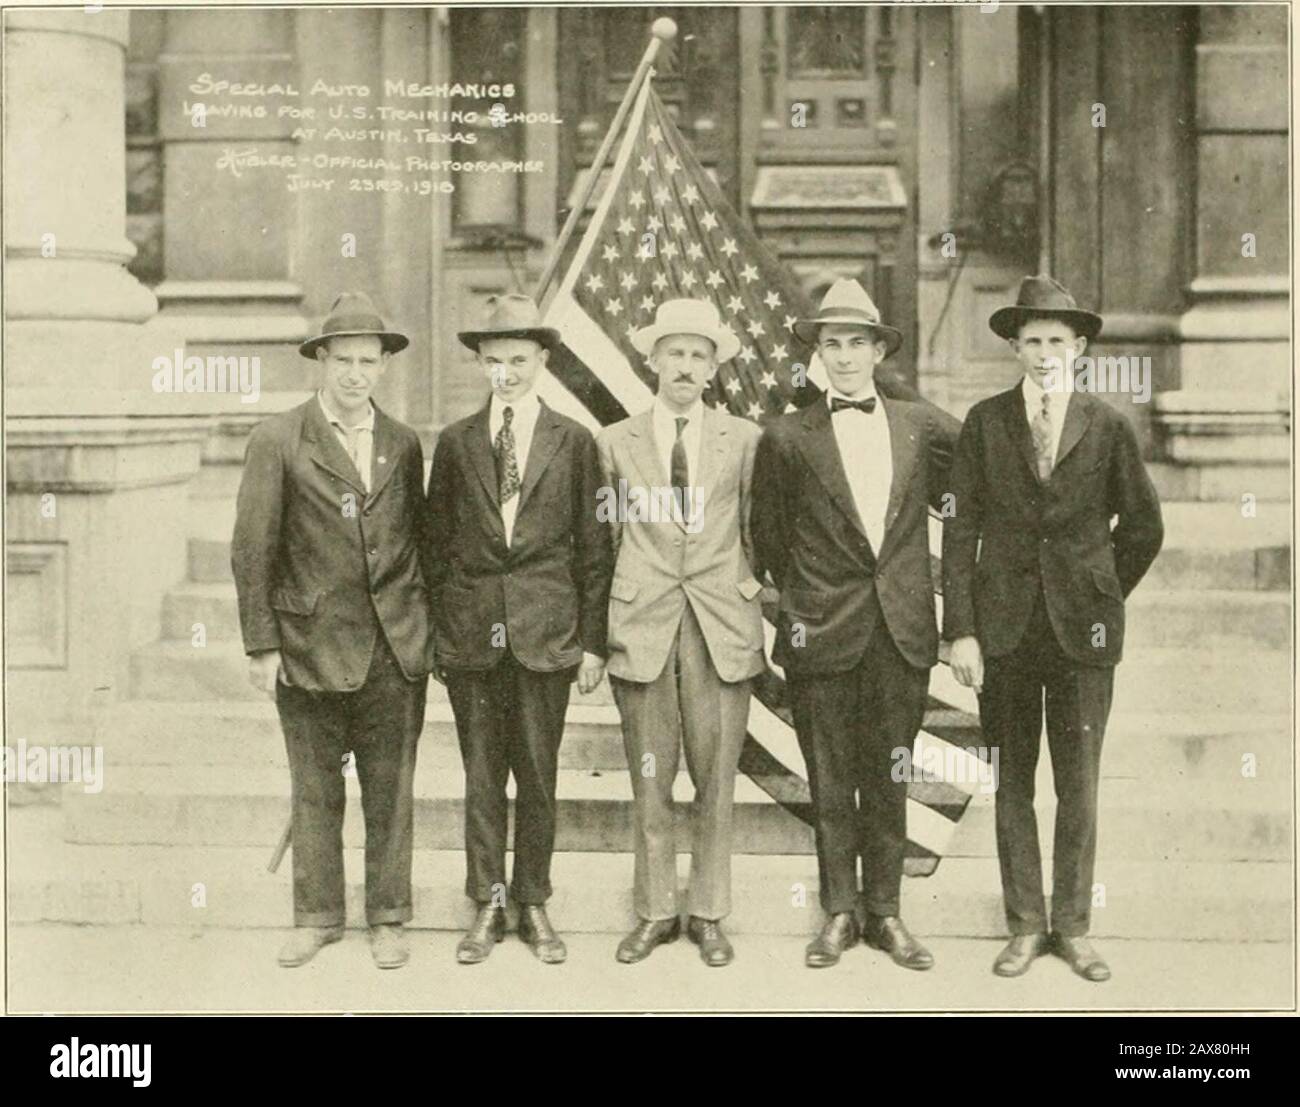 Condado de Marshall en la Guerra Mundial, 1917-1918 : una historia pictórica de la participación de la comunidad en todas las actividades en tiempo de guerra con una lista completa de soldados y marineros en servicio . INCREMENTO especial, ENVIADO A LA ESCUELA DE ENTRENAMIENTO AUTO MECHANICS, AUSTIN, TEXAS, 23 DE JULIO de 1918 De Izquierda a derecha: Guy A. Bailey, Harry L. Berg, L. L. Stookey, Ray H. Breckenridge, Ralph C. Brock Foto de stock